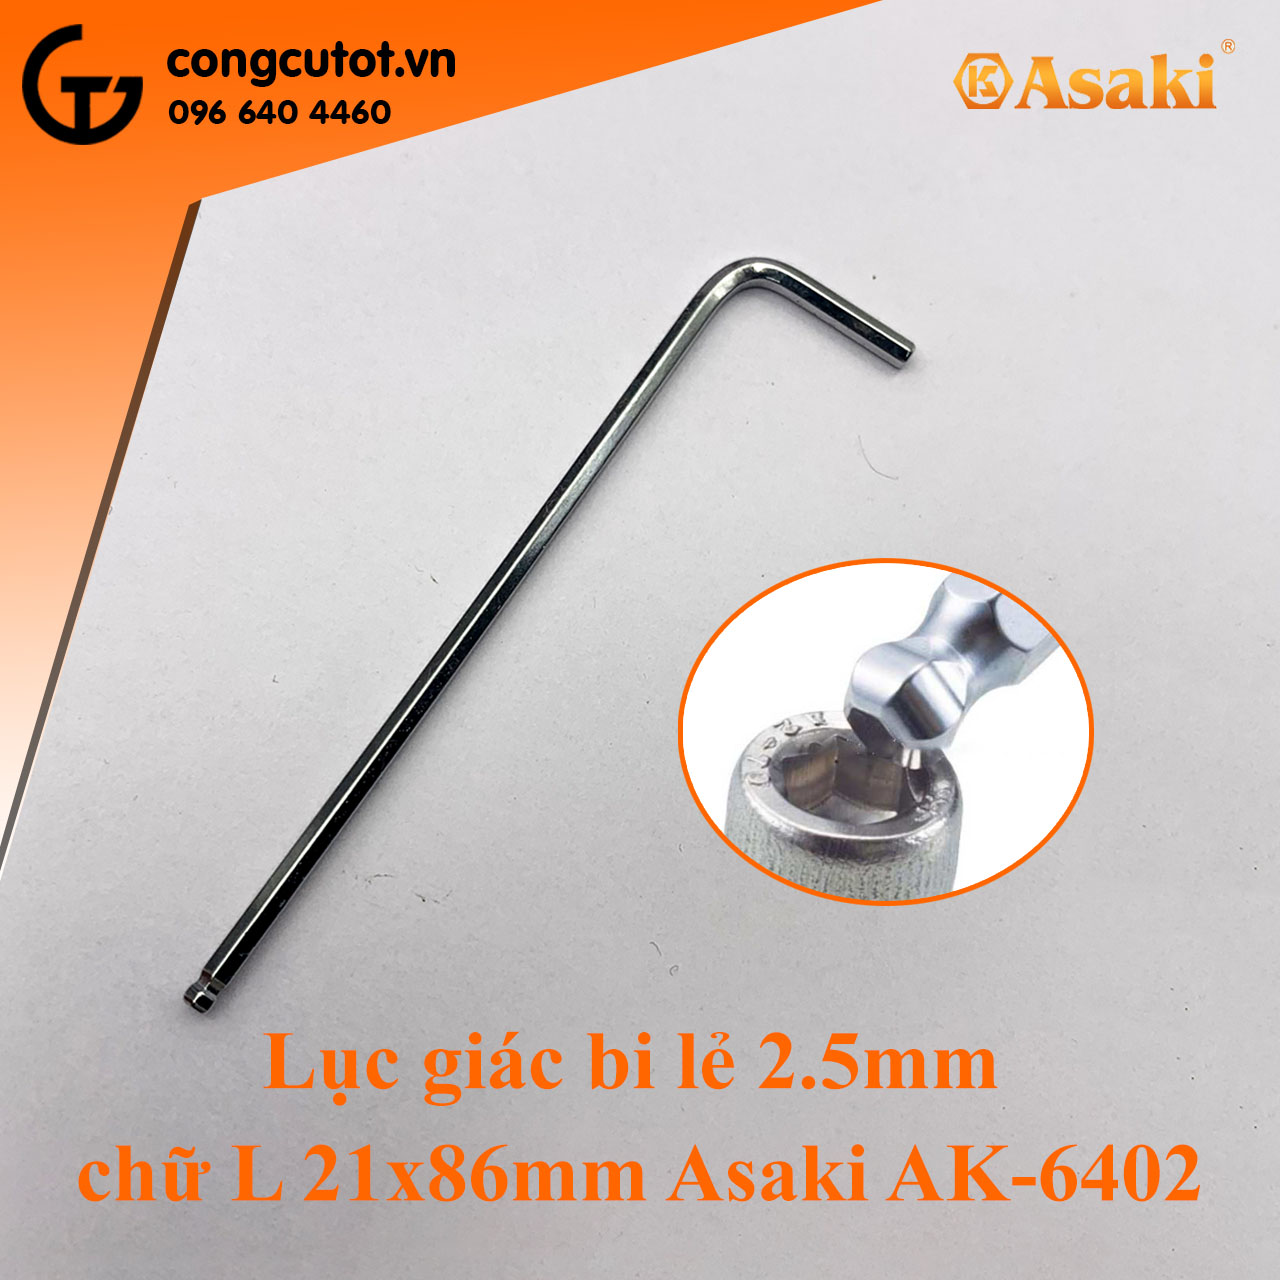 Lục giác bi lẻ cỡ 2.5mm hình thanh chữ L Asaki AK-6402